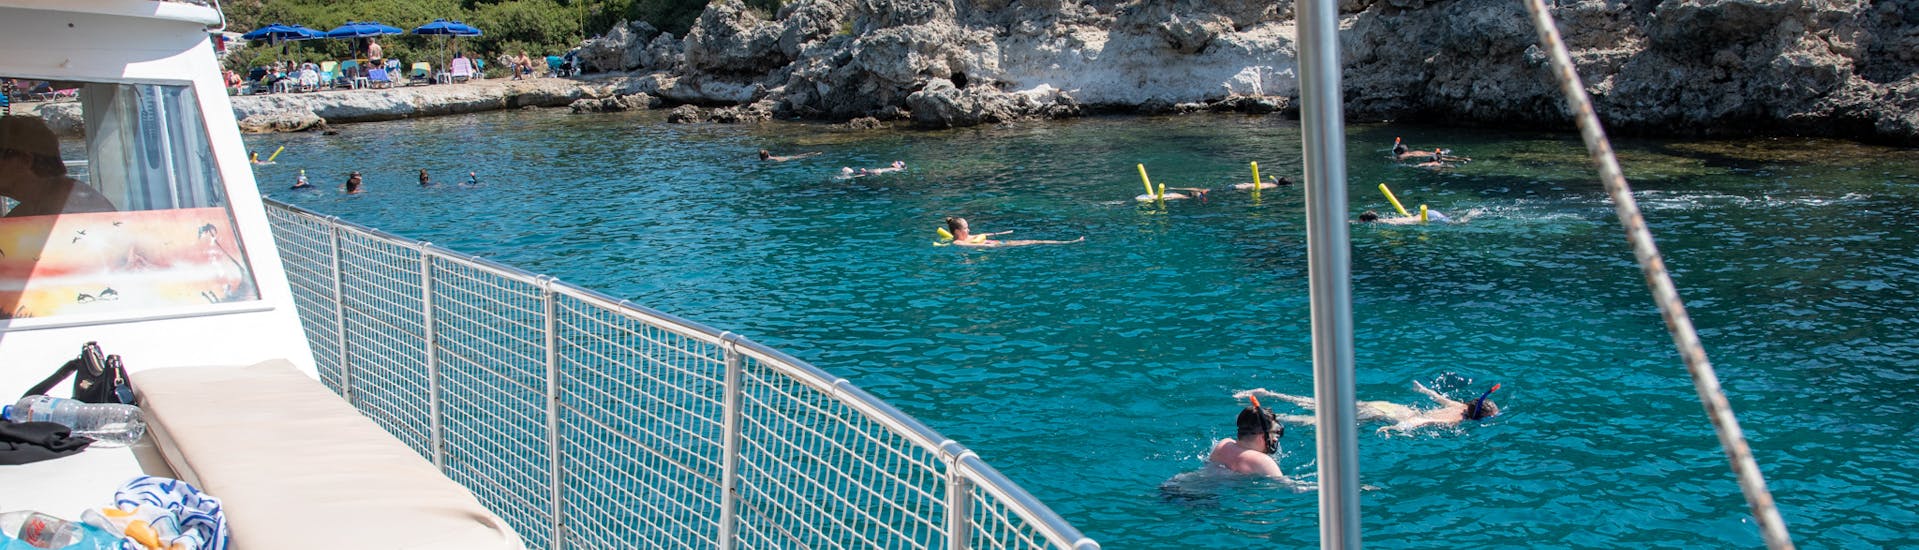 Gita privata in barca da Faliraki a Spiaggia di Traganou  e bagno in mare.